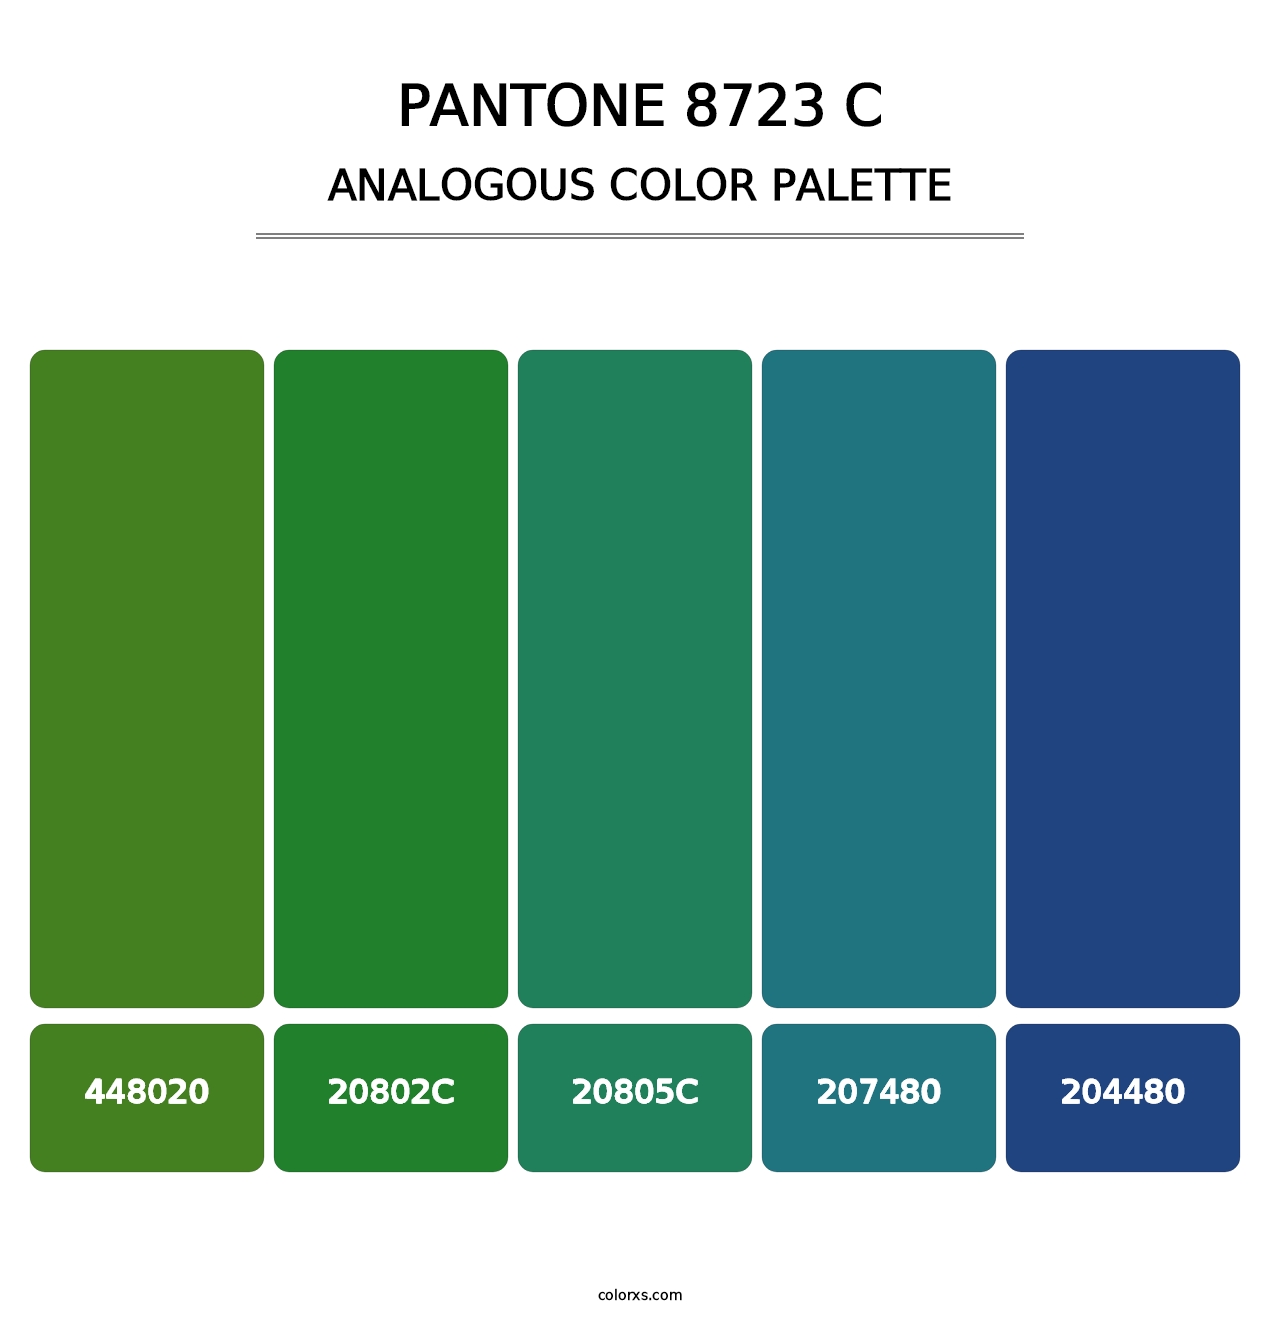 PANTONE 8723 C - Analogous Color Palette